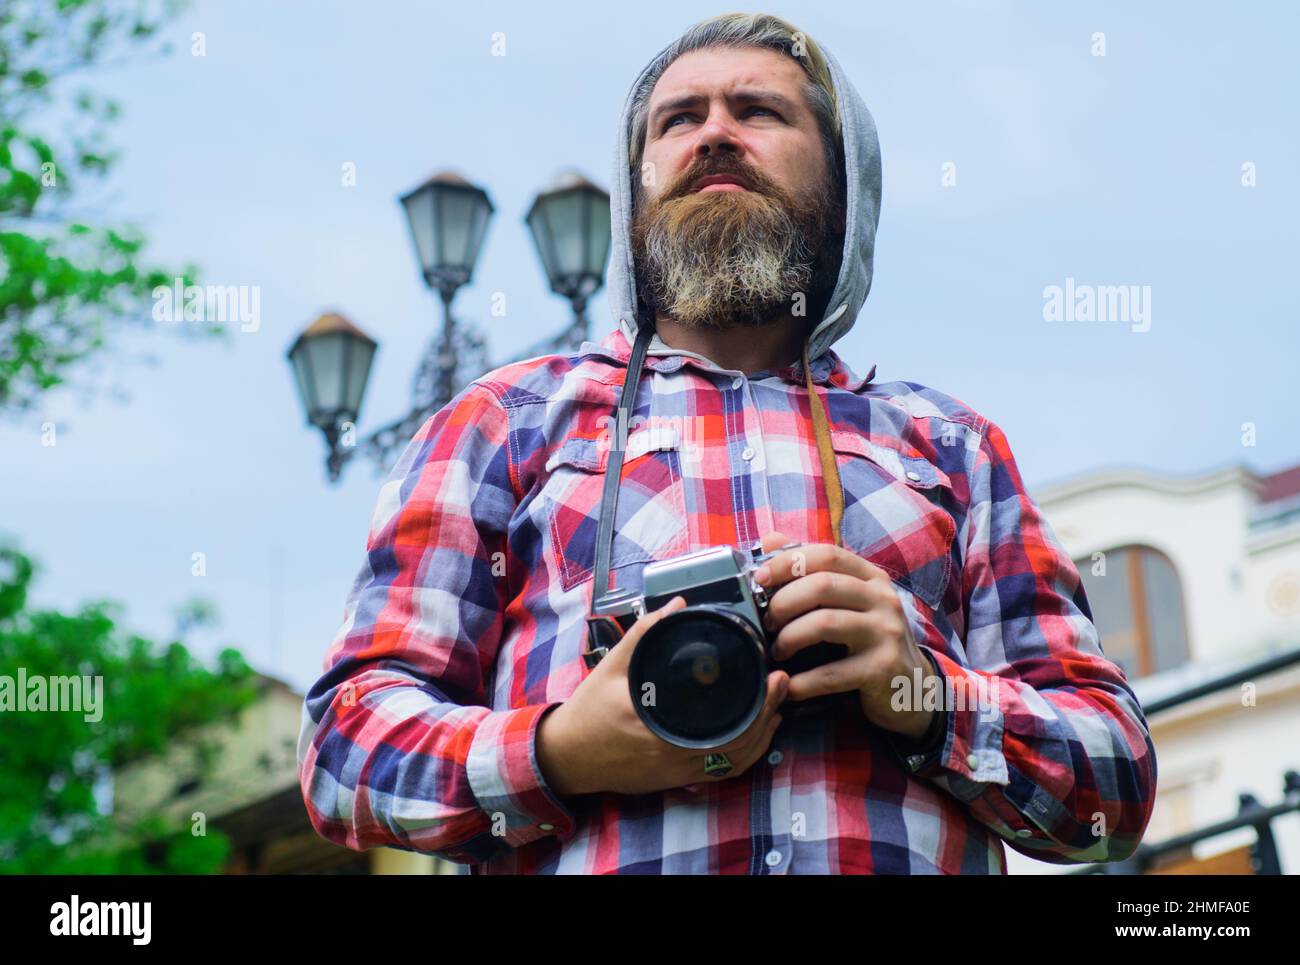 Fotograf mit Fotokamera. Bärtiger Mann, der Foto auf einer Digitalkamera macht. Reisende machen Fotos auf der Straße. Stockfoto